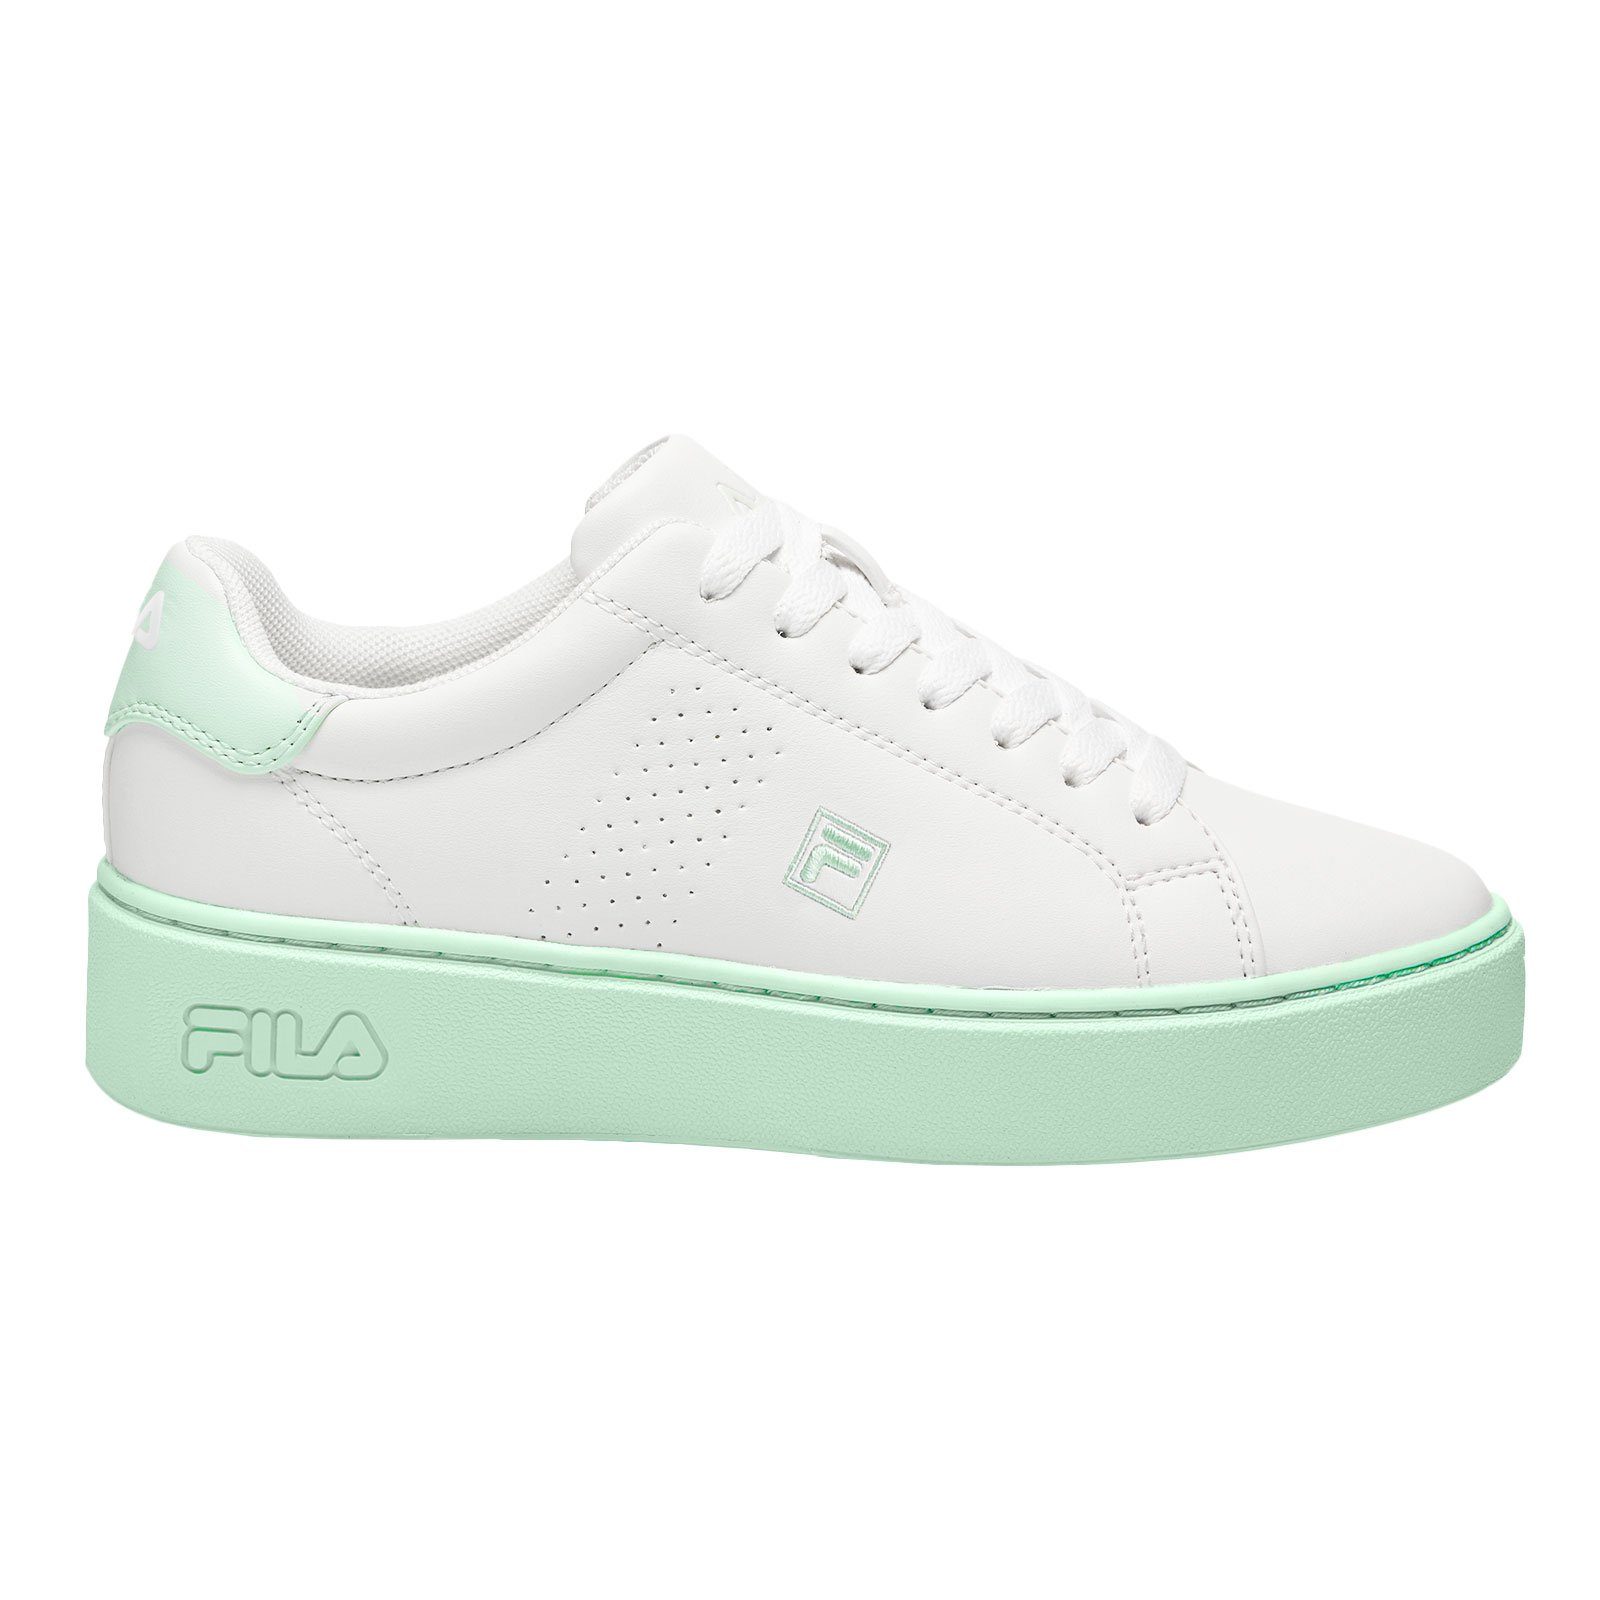 Fila Damen Sneaker mit Plateausohle und Akzenten in zarten Pastellfarben 94W white / bay | Sneaker